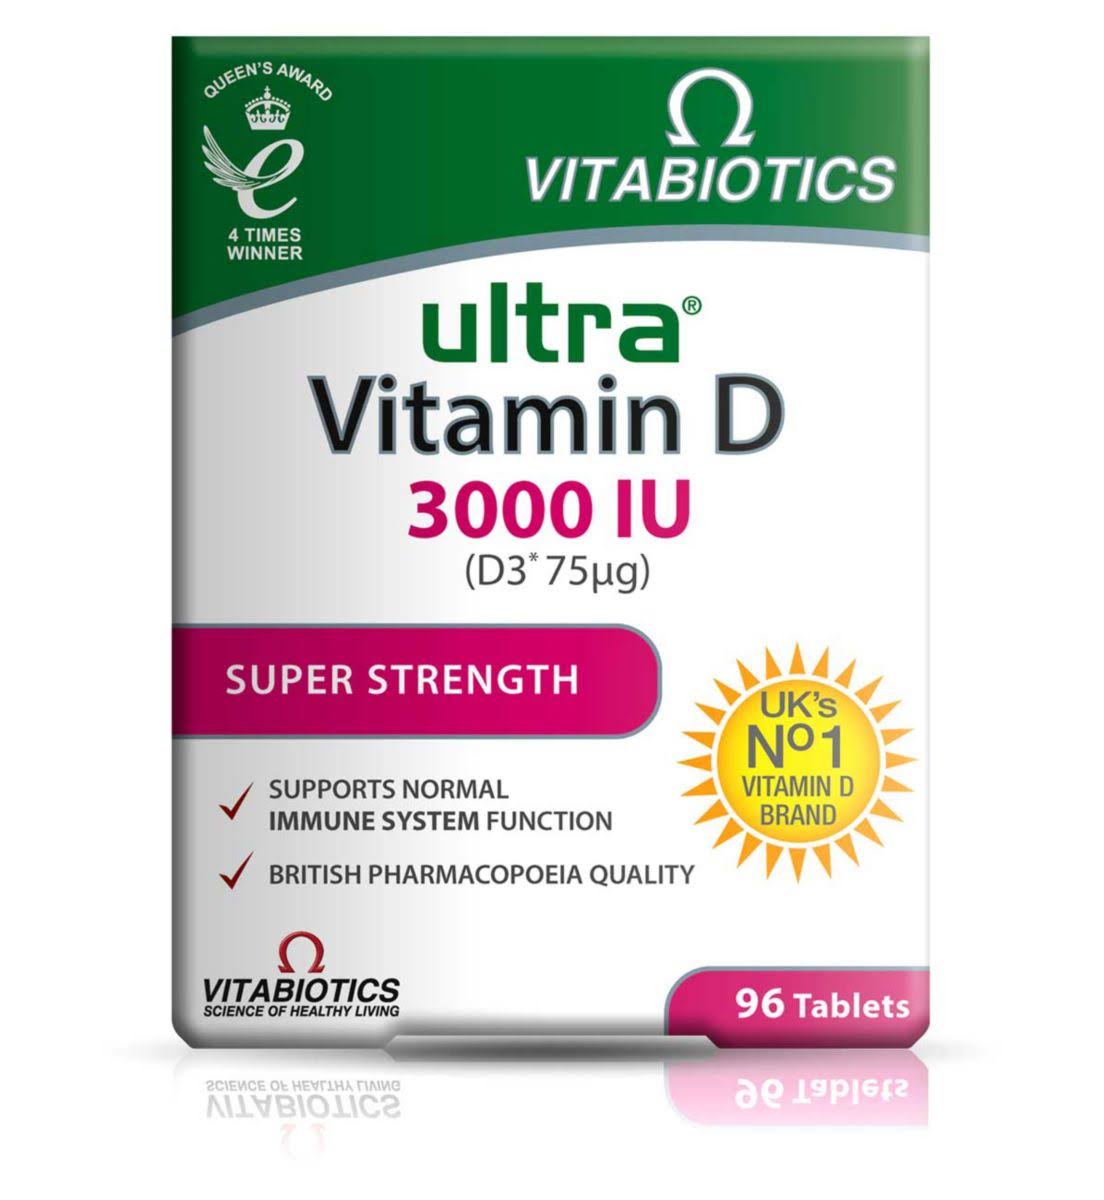 Vitabiotics Ultra Vitamin D D3*75μg 3000IU Super Strength 96 Tablets